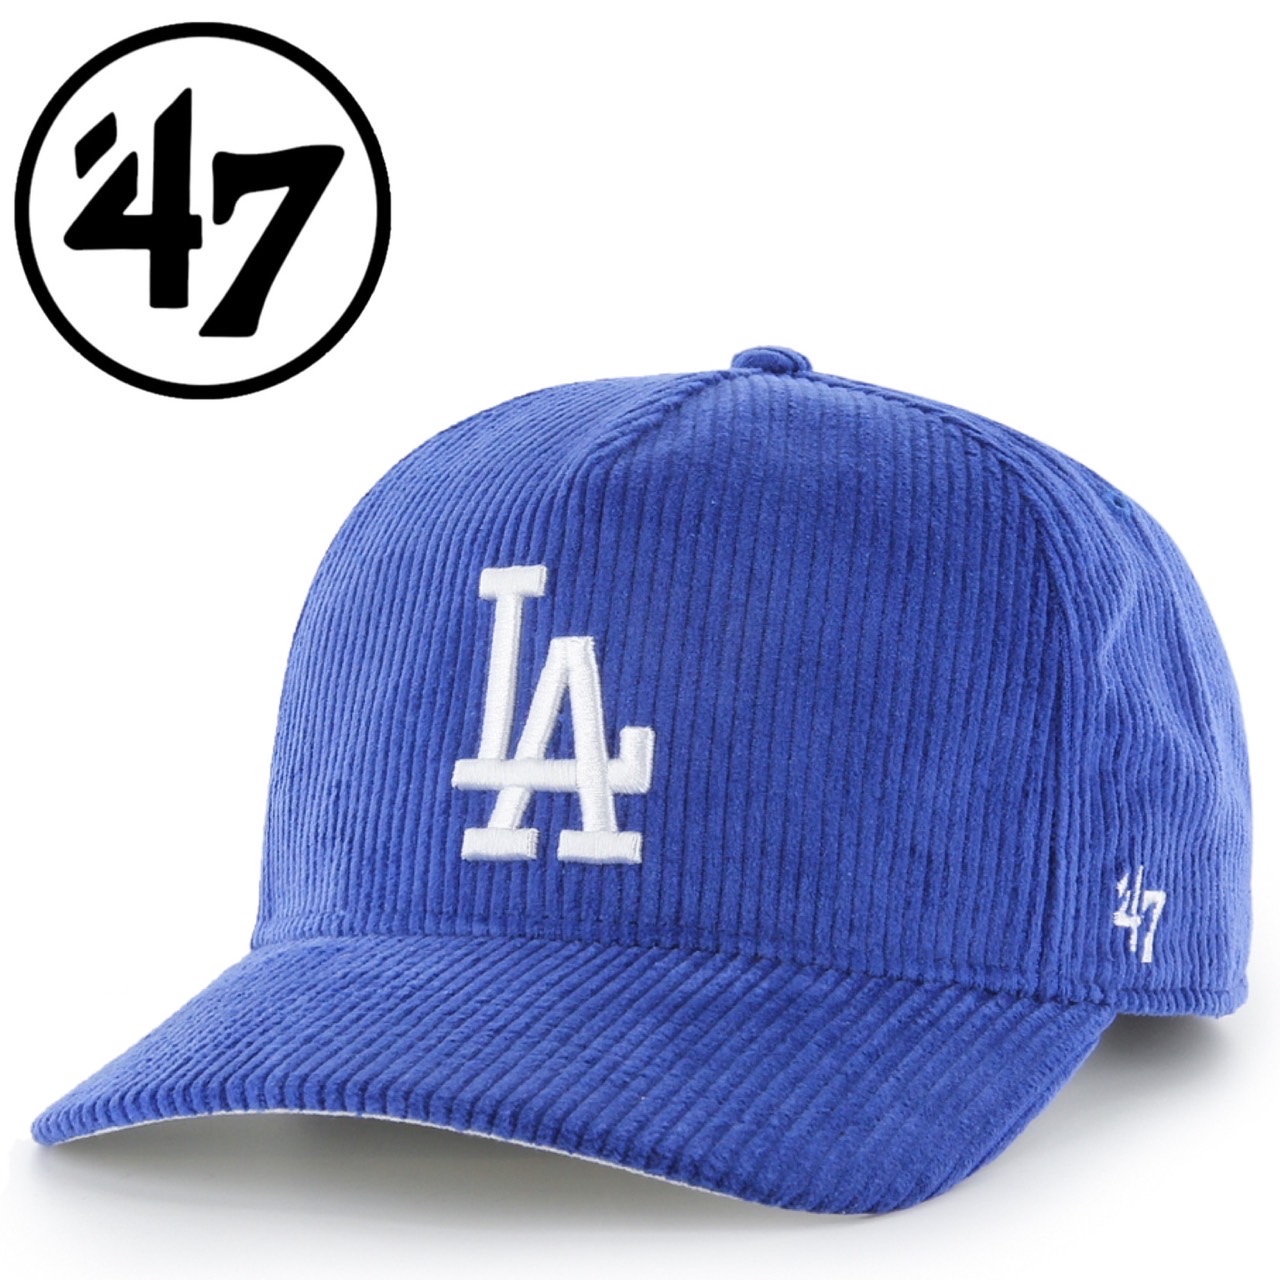 47 フォーティーセブン ブランド HITCH キャップ コーデュロイ 帽子 ヒッチ 刺繍ロゴ 暖か メンズ レディース 野球帽 野球チーム  47BRAND HITCH CORDUROY